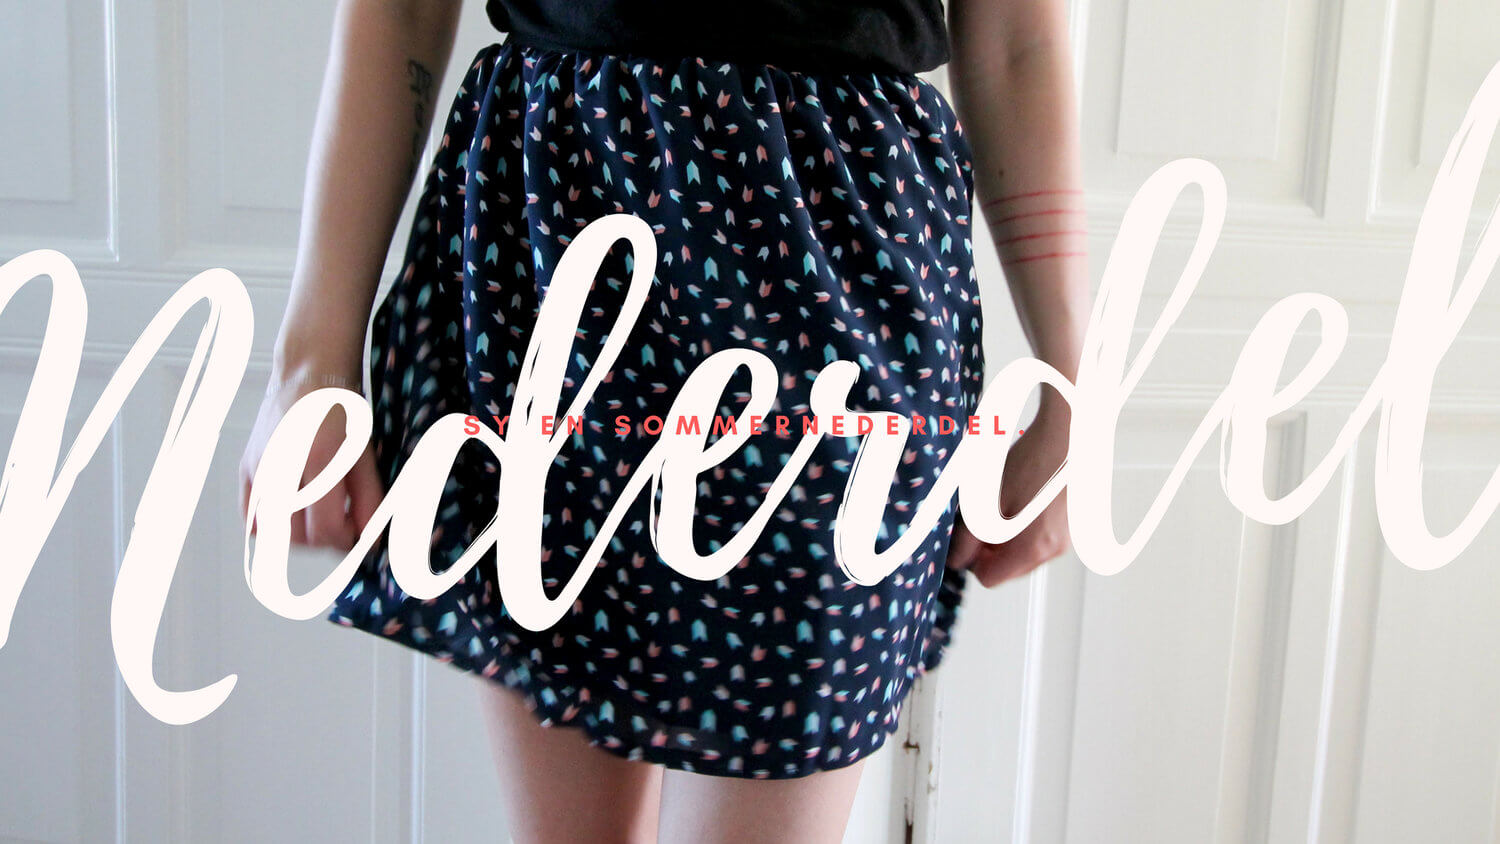 Simpel nederdel med til sommeren. — Flair